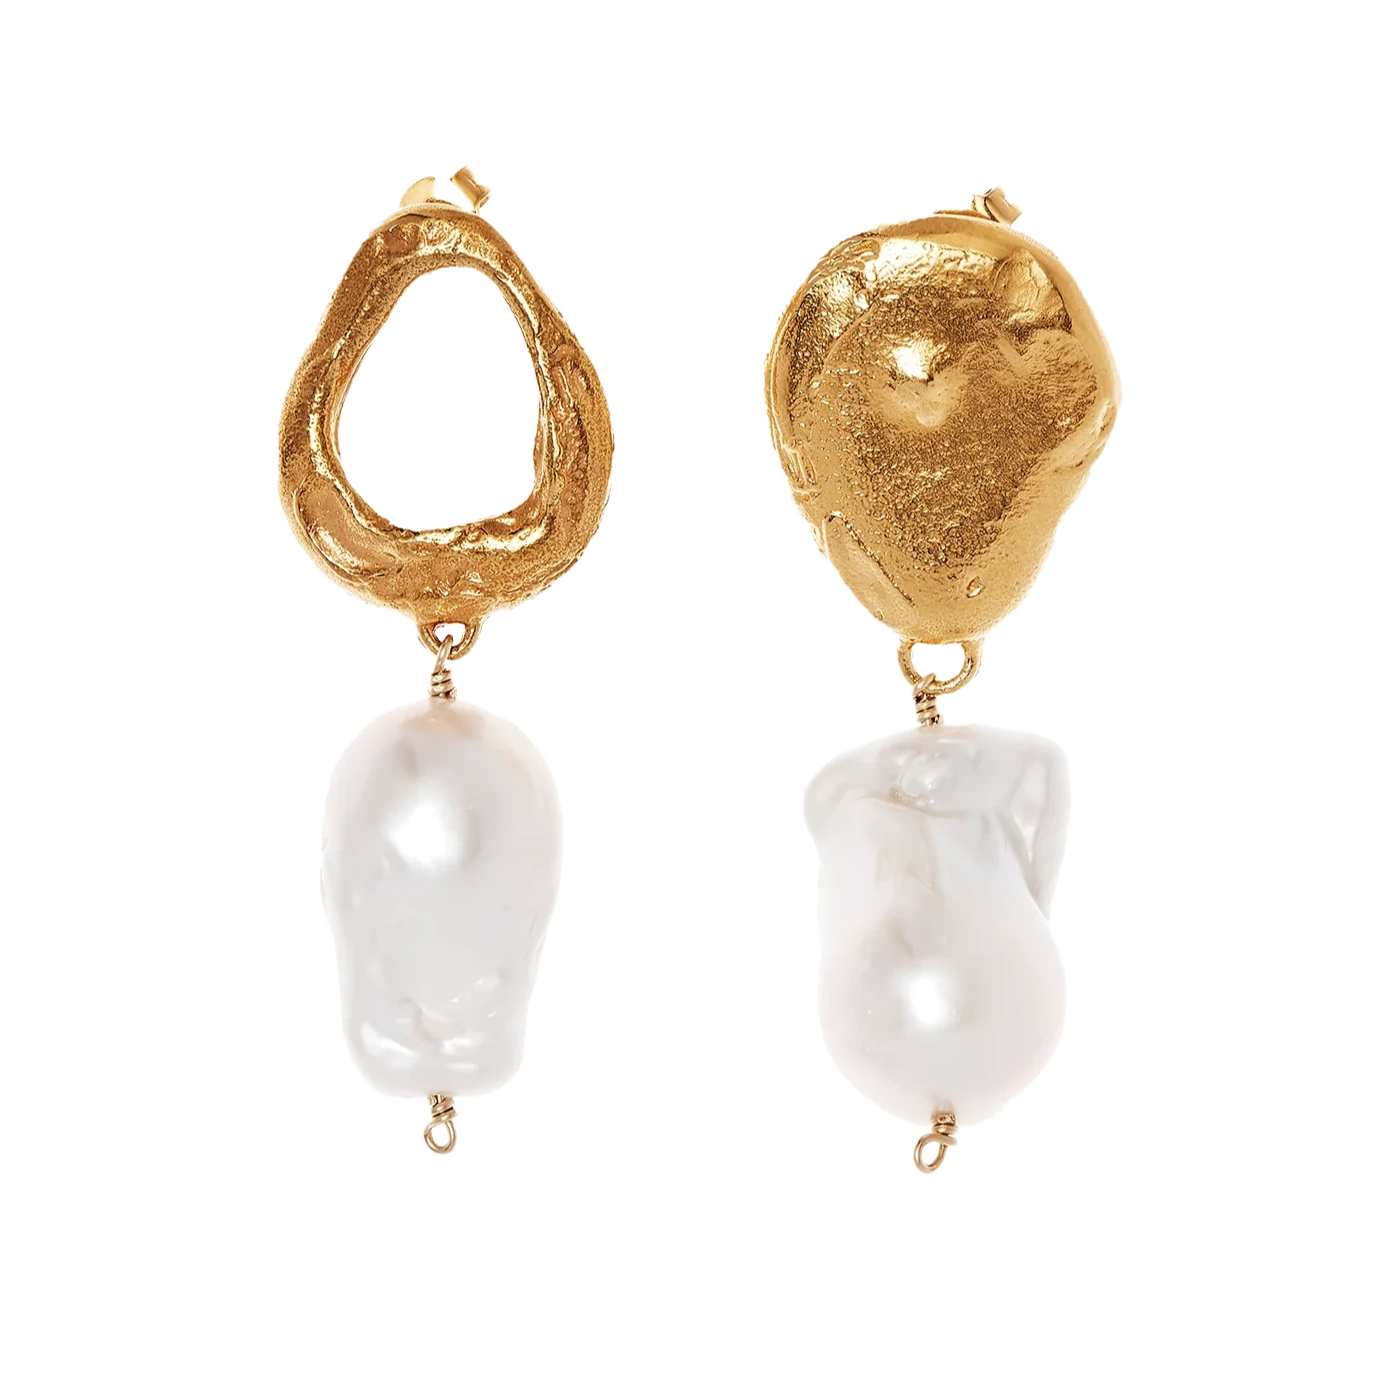 Alighieri solid gold earrings